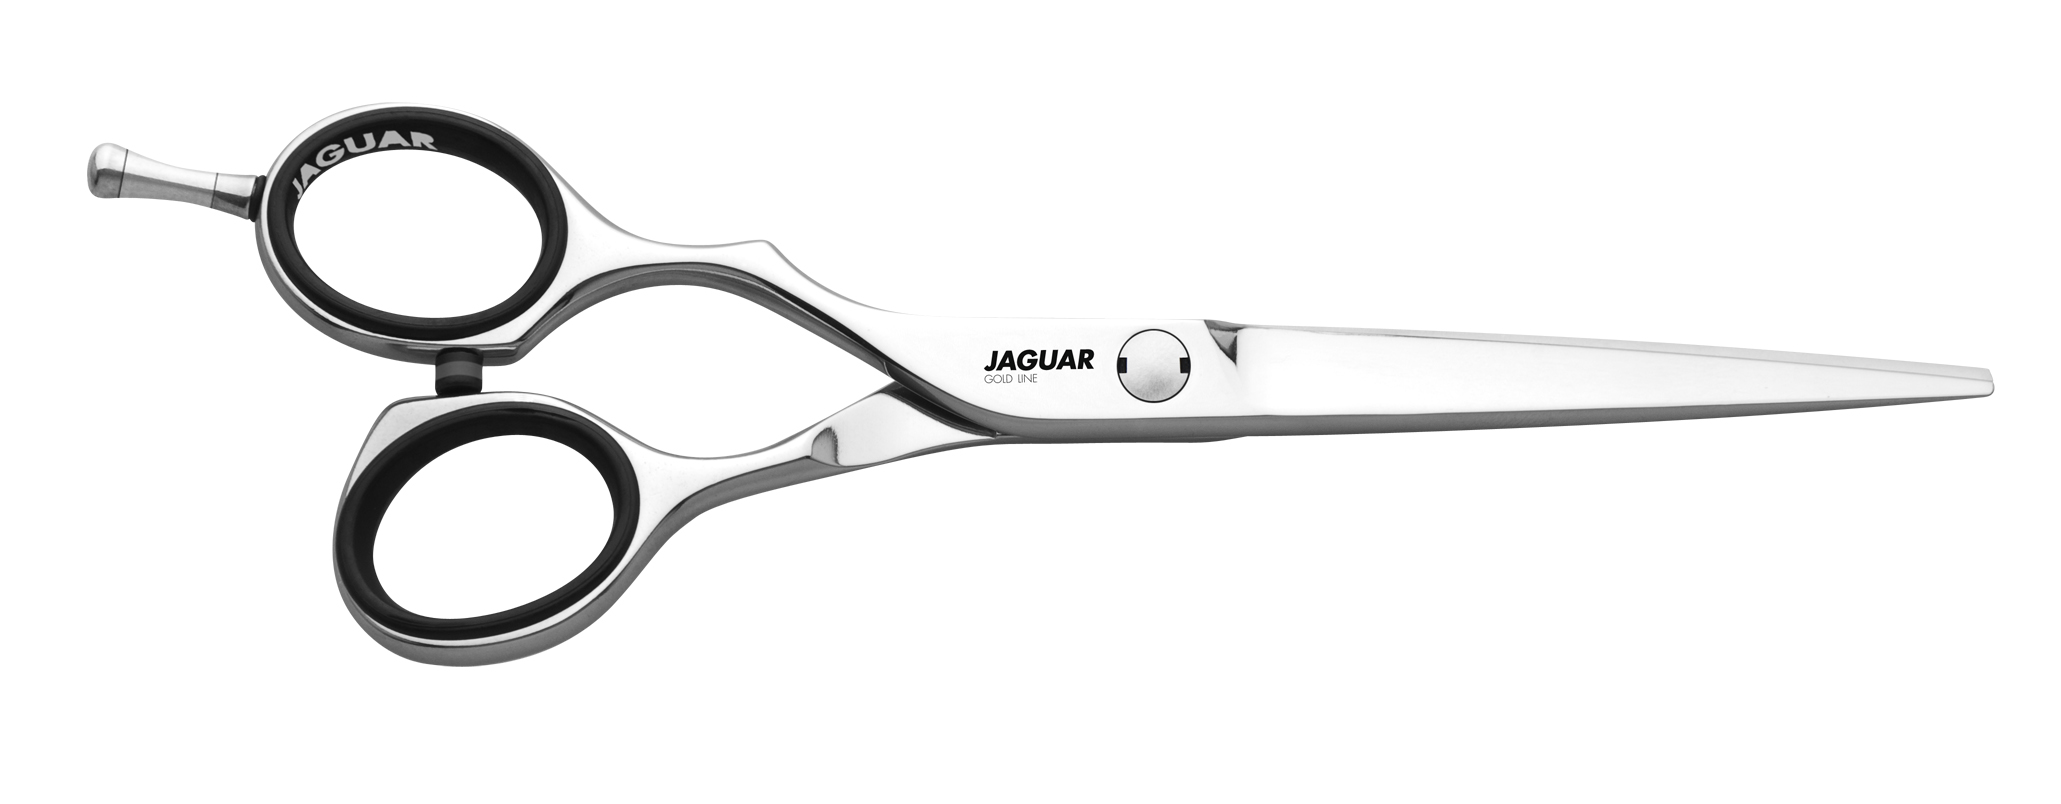 5 преимуществ ножниц JAGUAR, которые сделают ваши стрижки идеальными